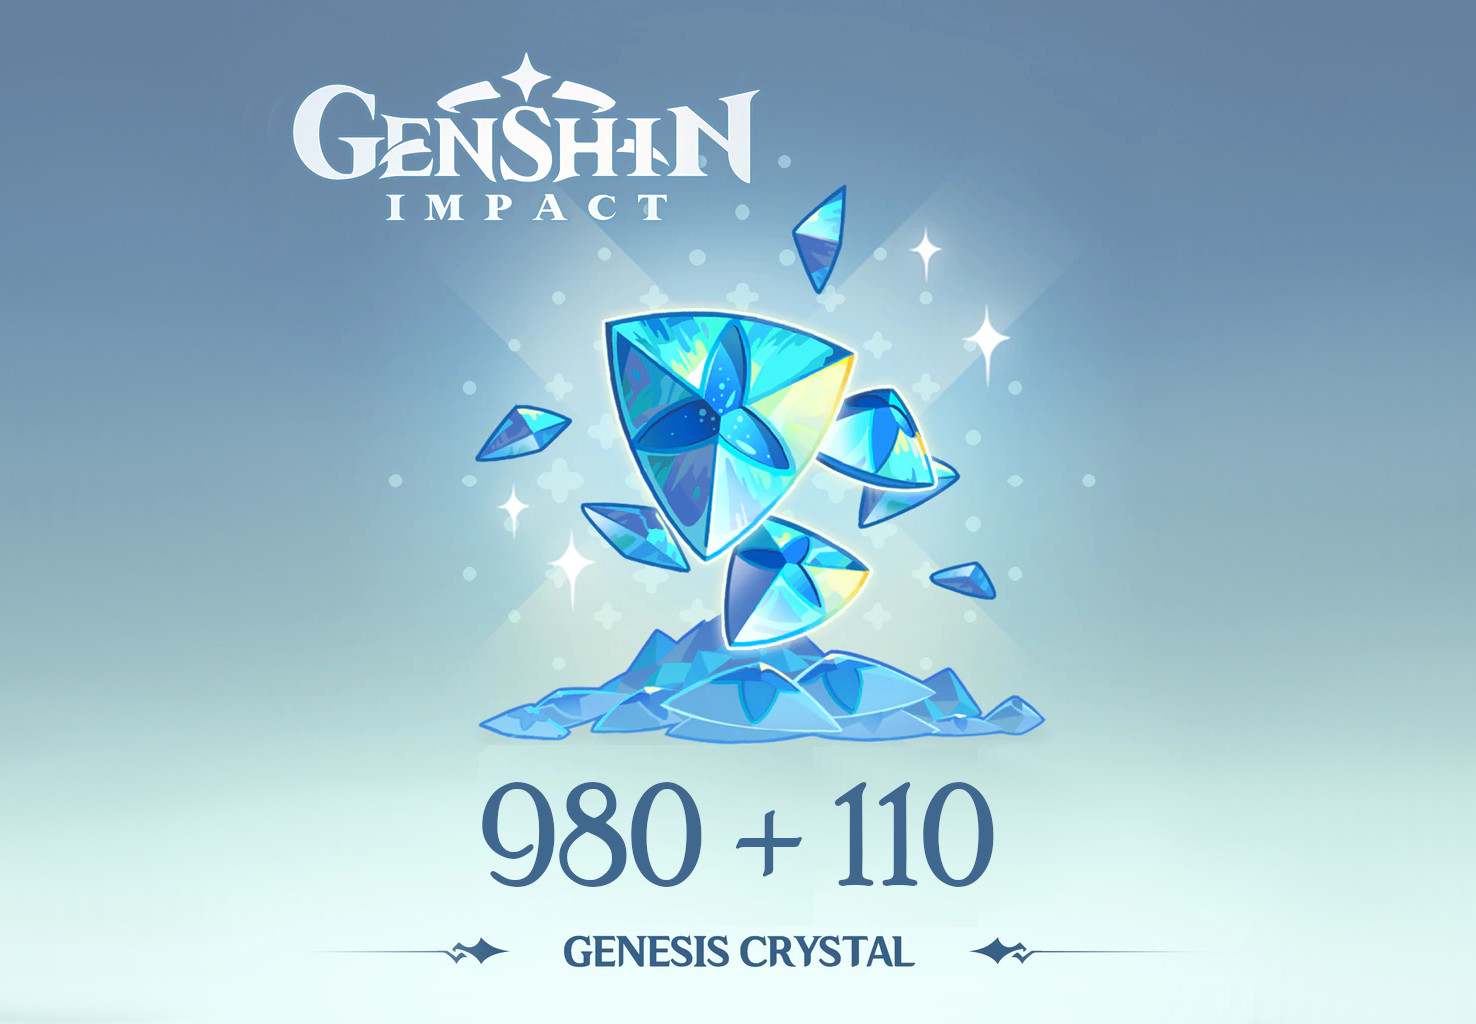 Genshin Impact - 980 + 110 Genesis Crystals Reidos Voucher (17.23$)